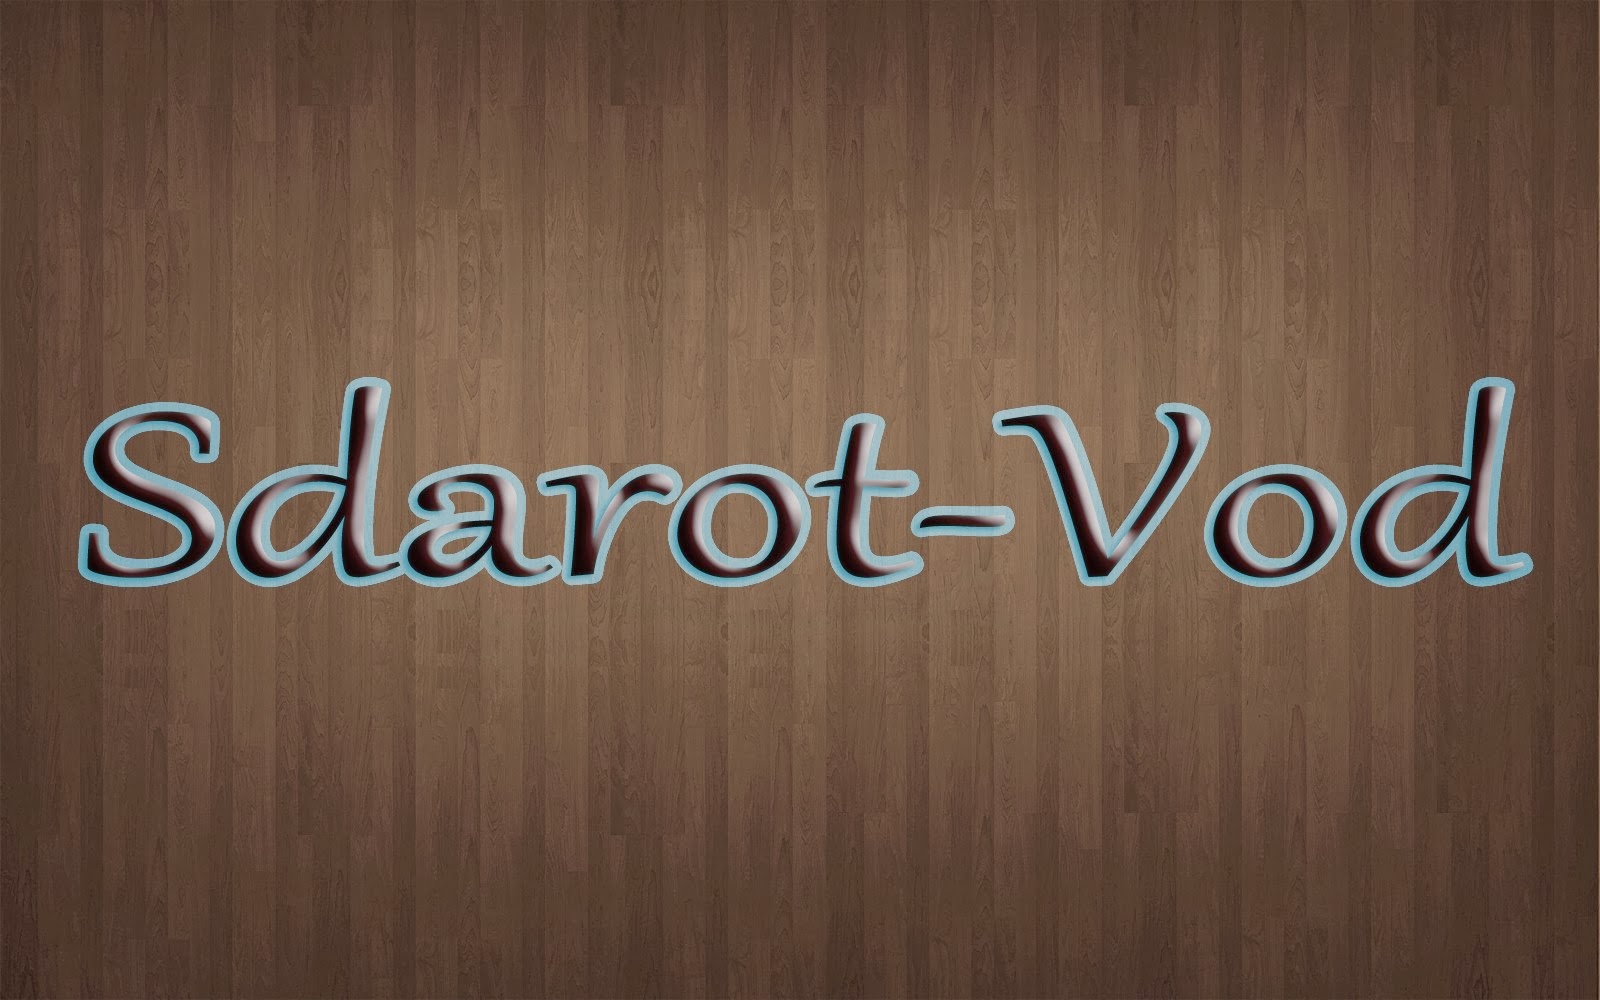 Sdarot-Vod